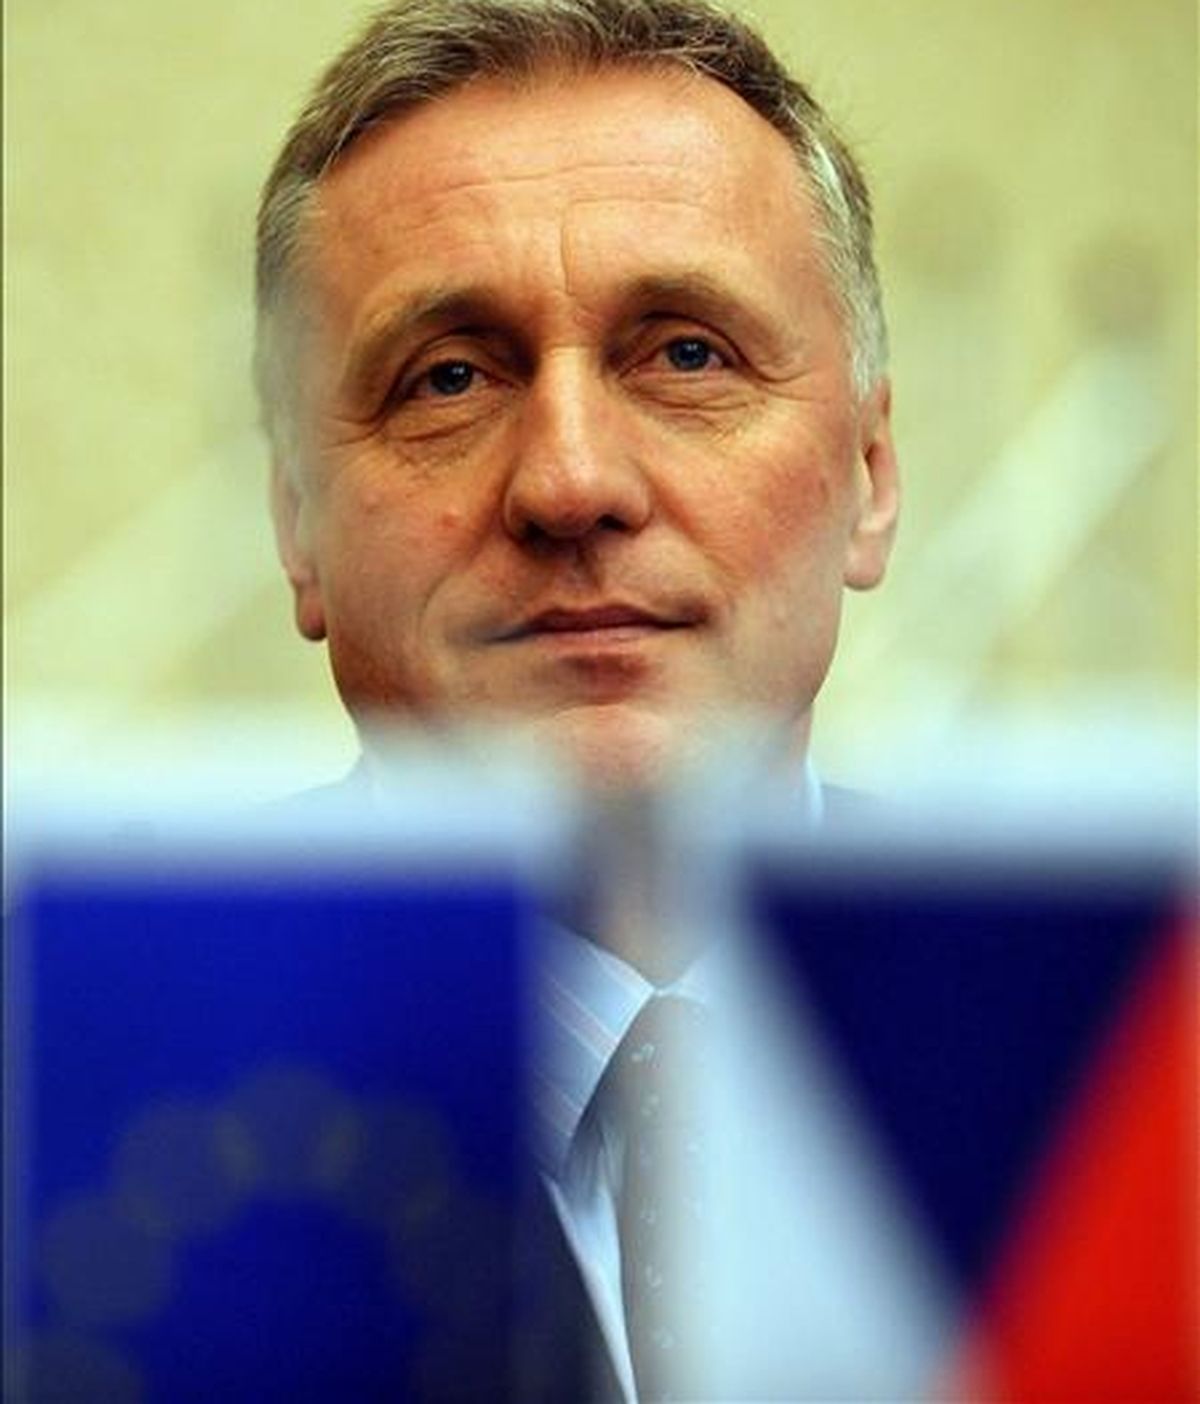 El dimisiorio primer ministro checo, Mirek Topolanek. EFE/Archivo